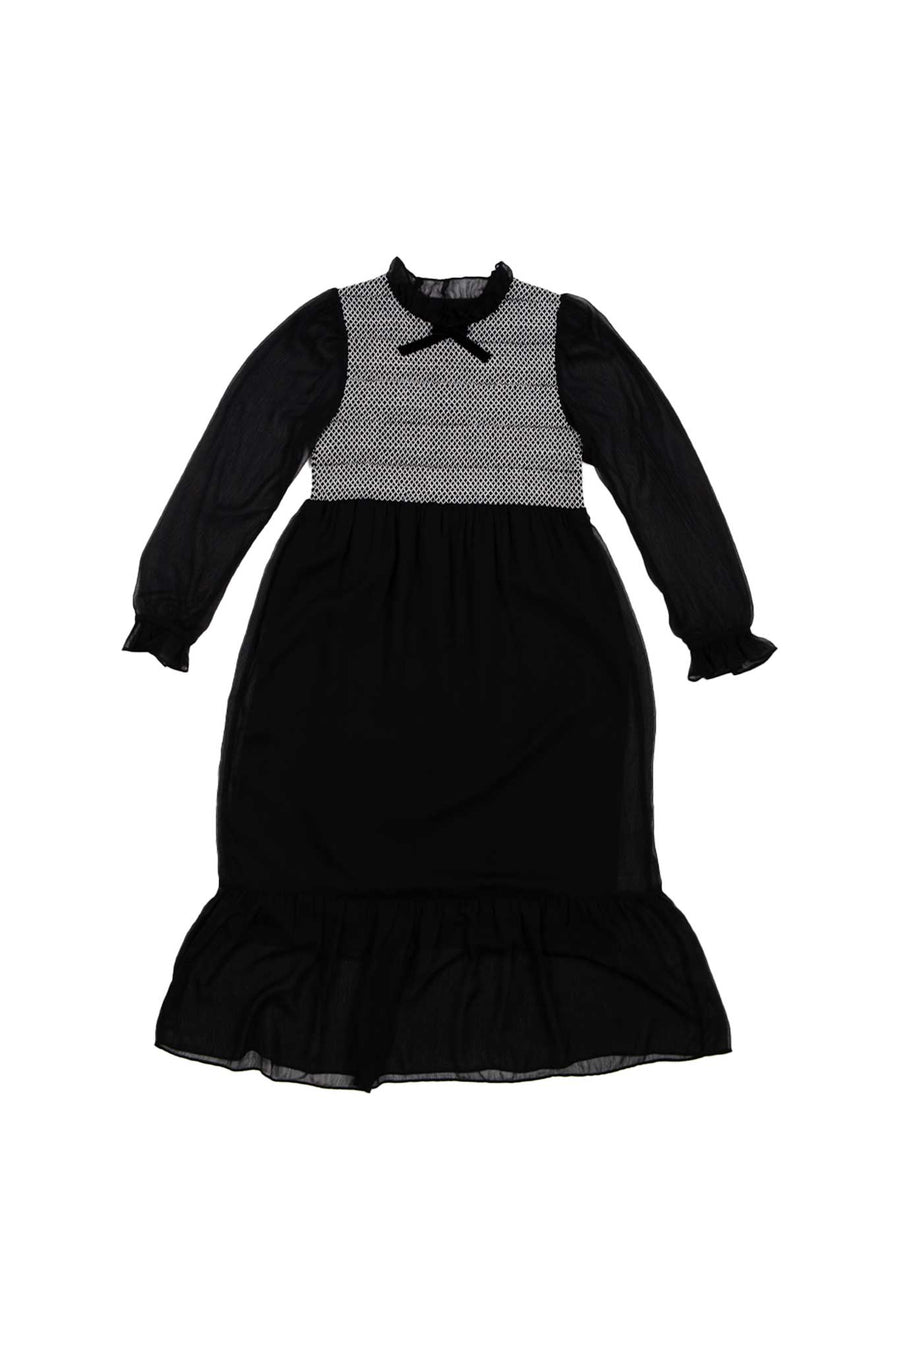 BATSHEVA - Cosette Dress in Black Chiffon